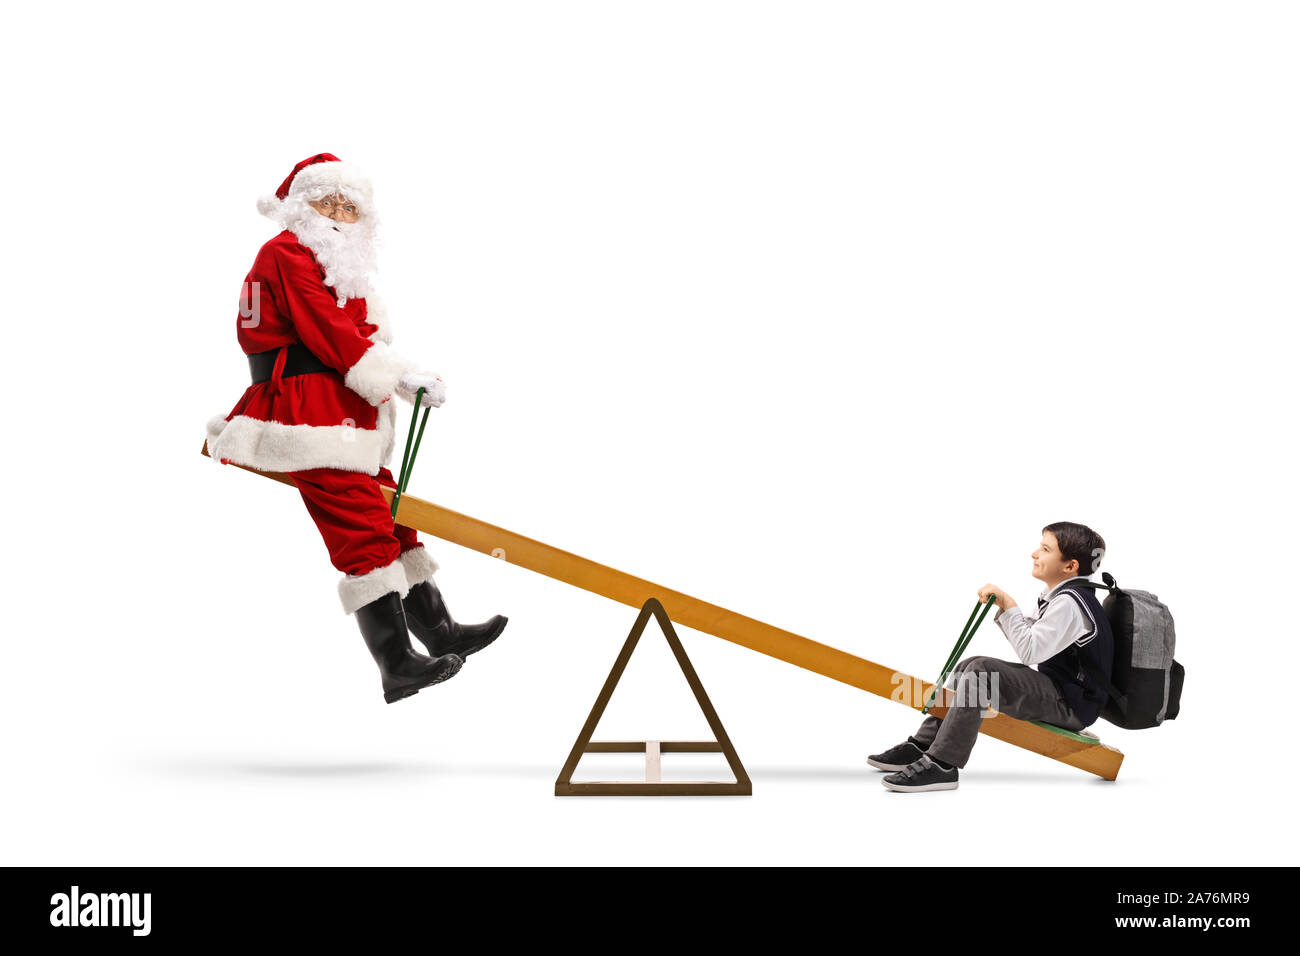 Santa Claus jouant sur une balançoire avec un écolier isolé sur fond blanc Banque D'Images